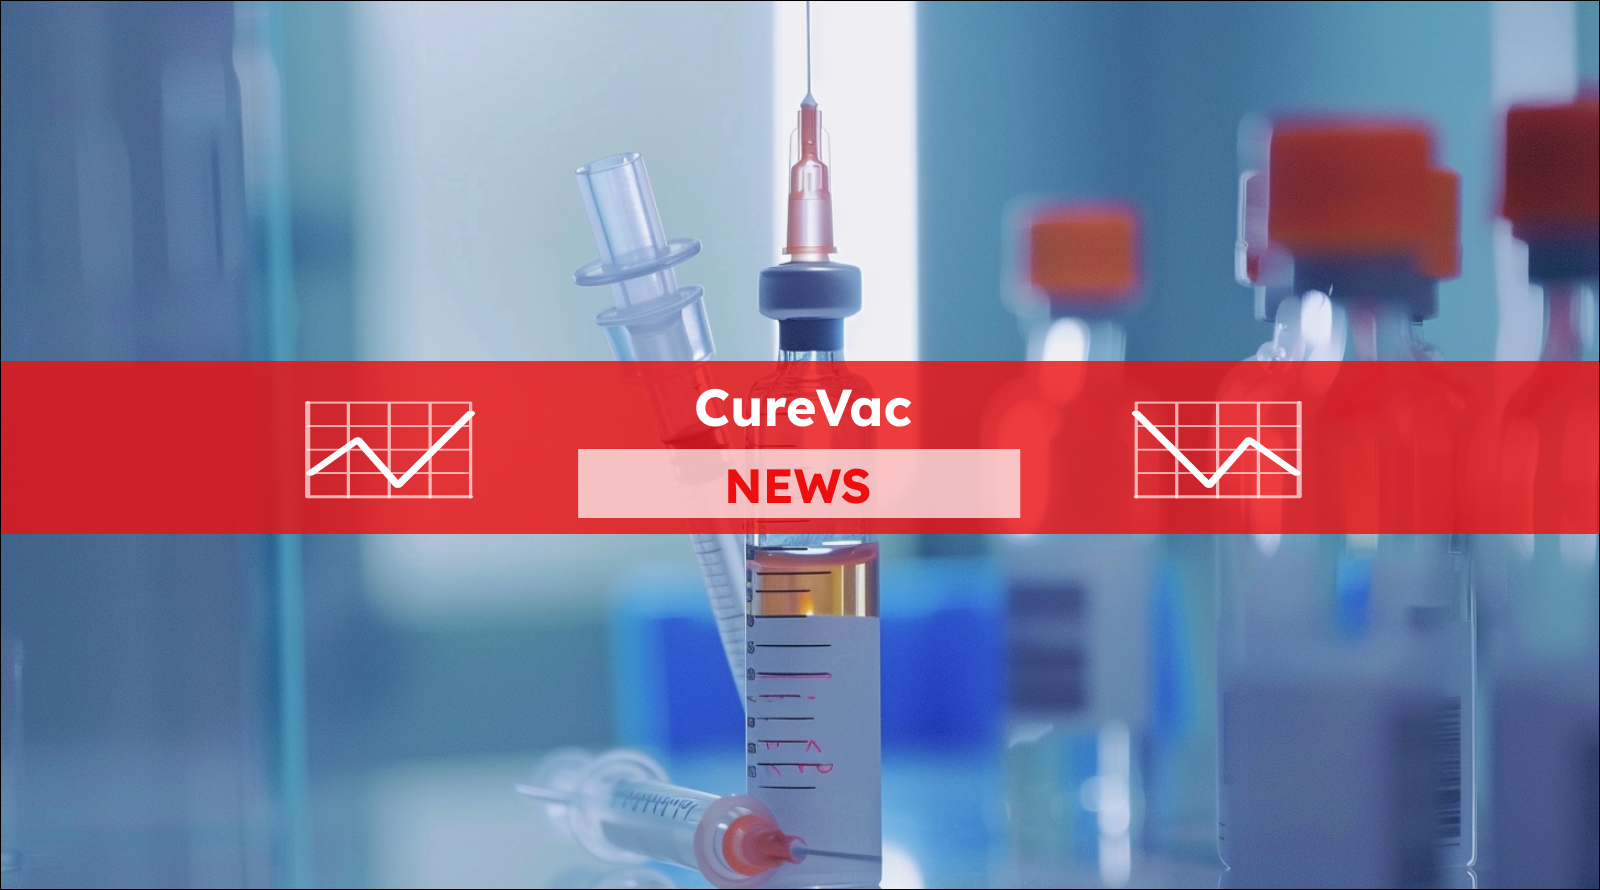 Spritze und Impfstoff auf dem Tisch im Labor, mit einem CureVac NEWS Banner.